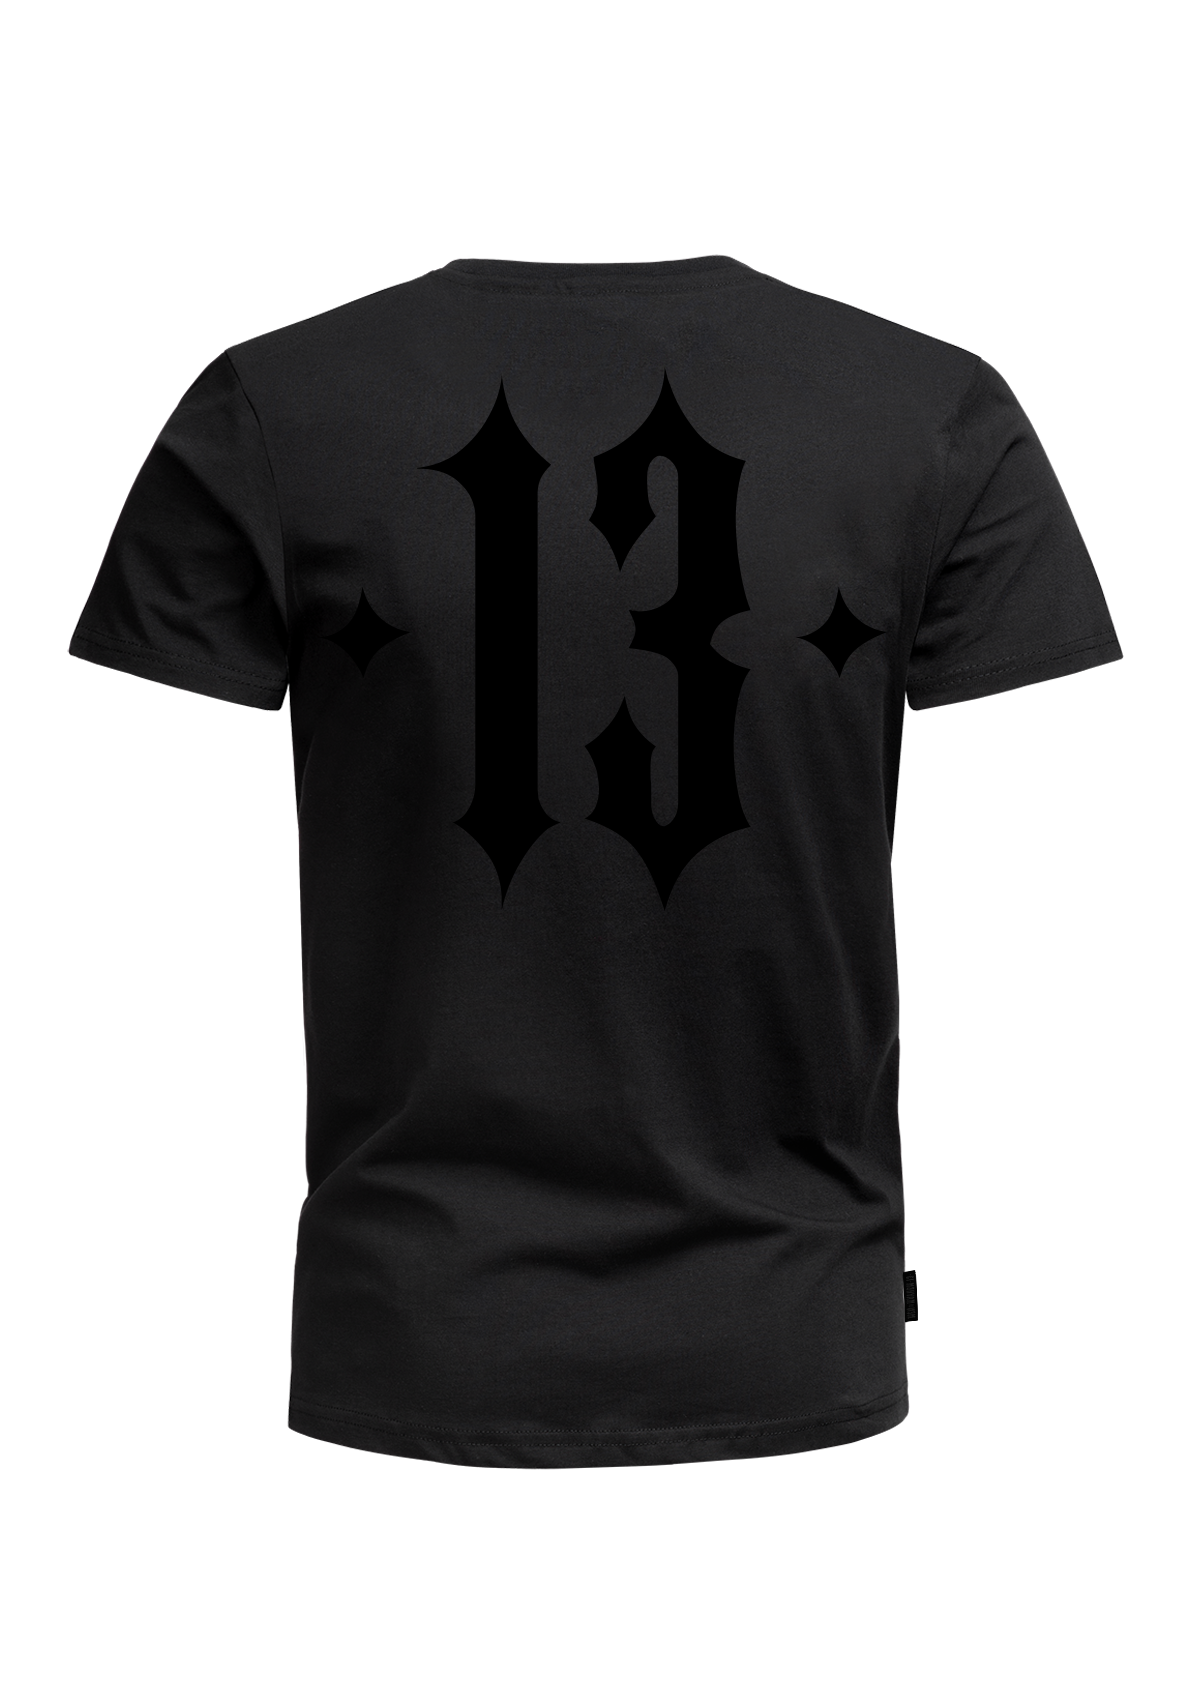 T-Shirt Mayhem Black on Black